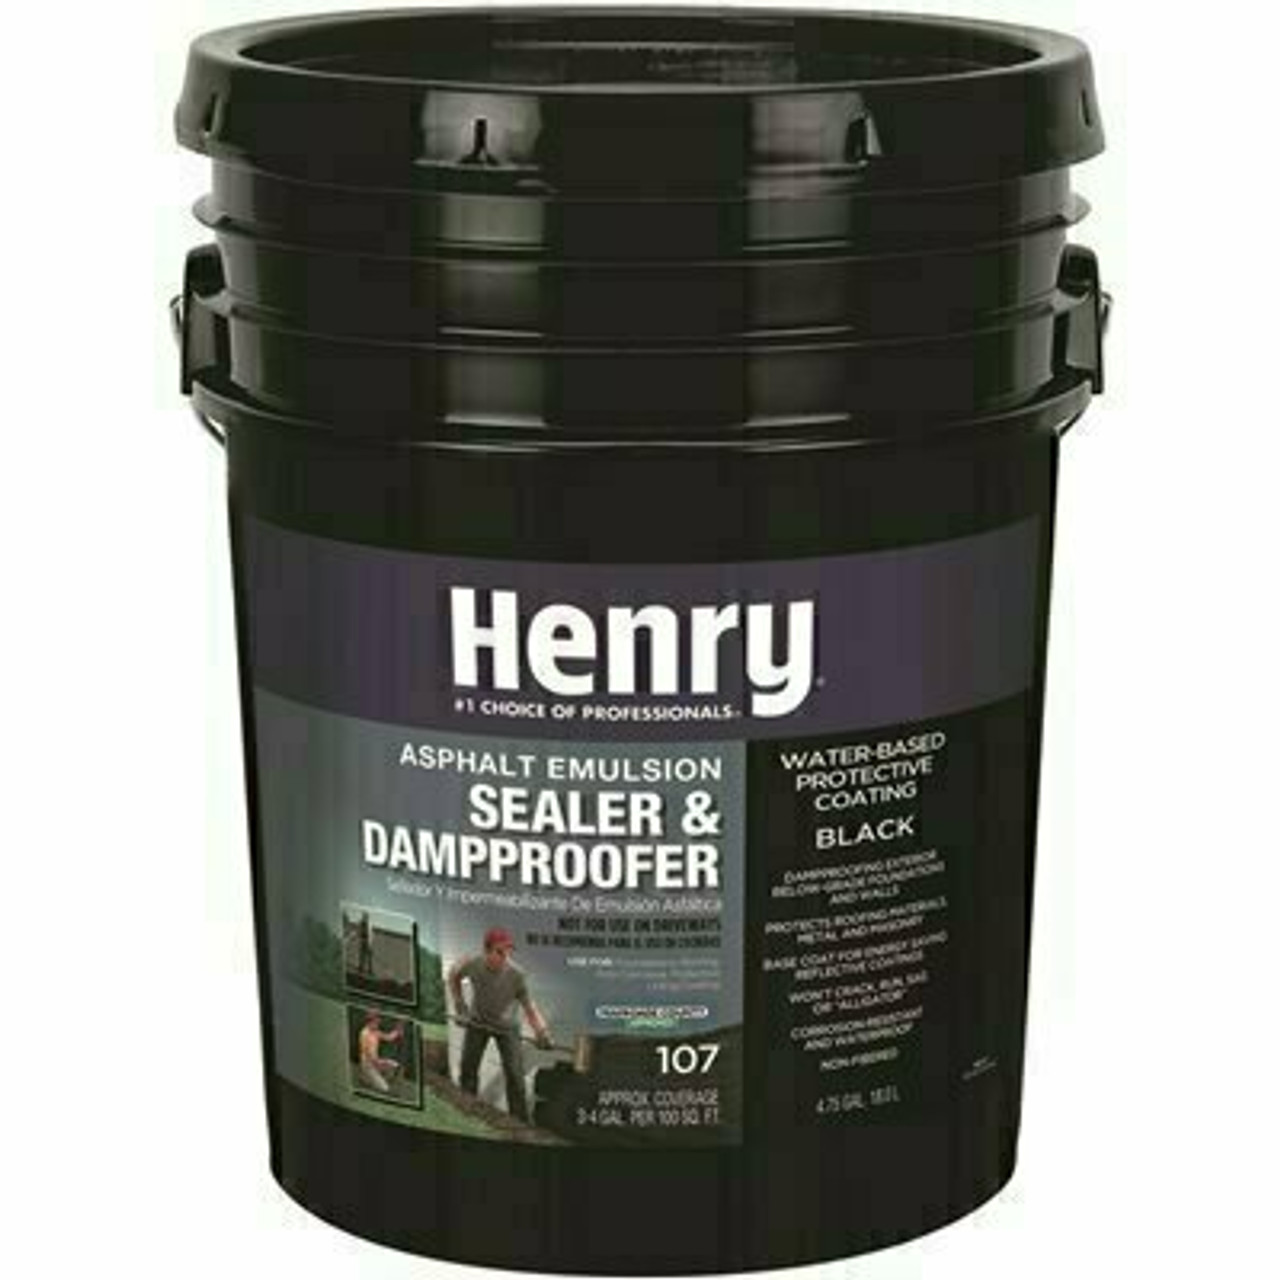 Henry 4.75 Gal. Asphalt Emulsion Sealer And Dampproofer Roof Coating